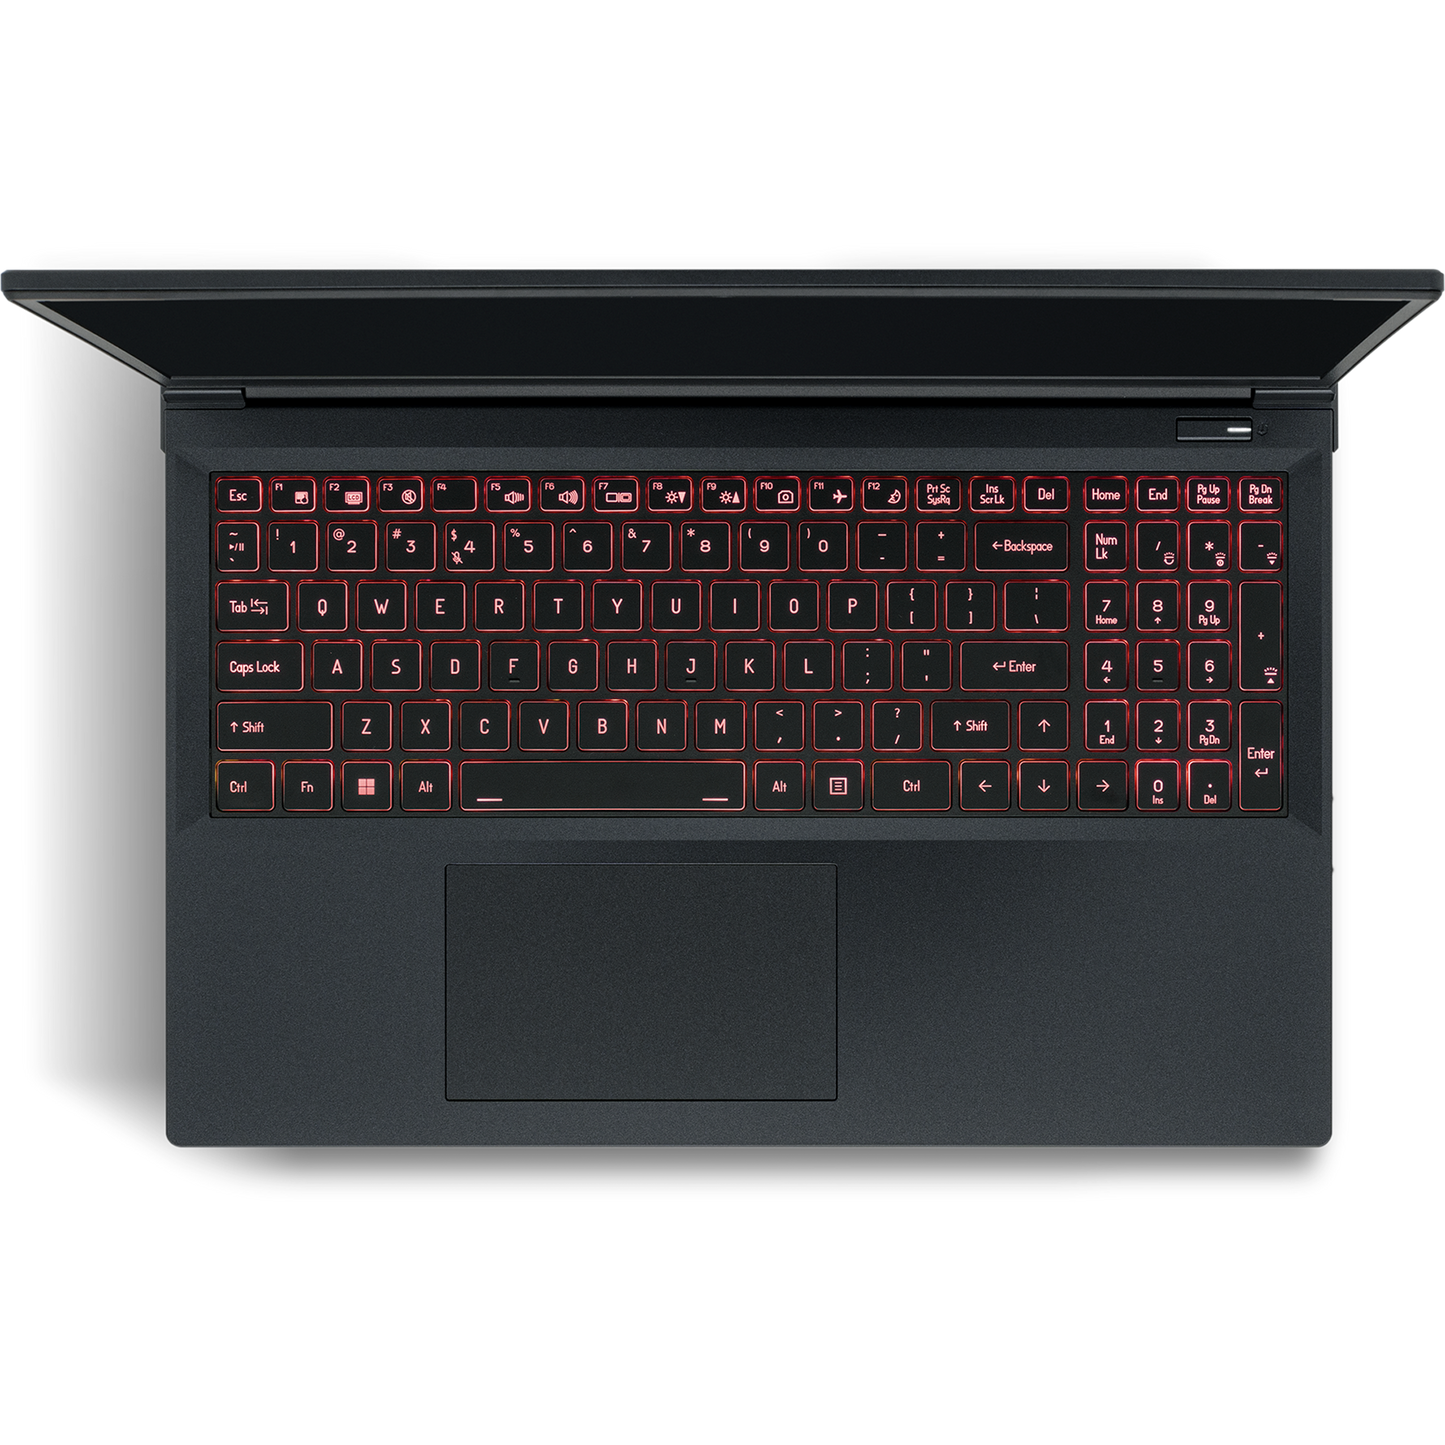 SAGER NP5350C (Clevo V350ENCQ) Gaming Laptop